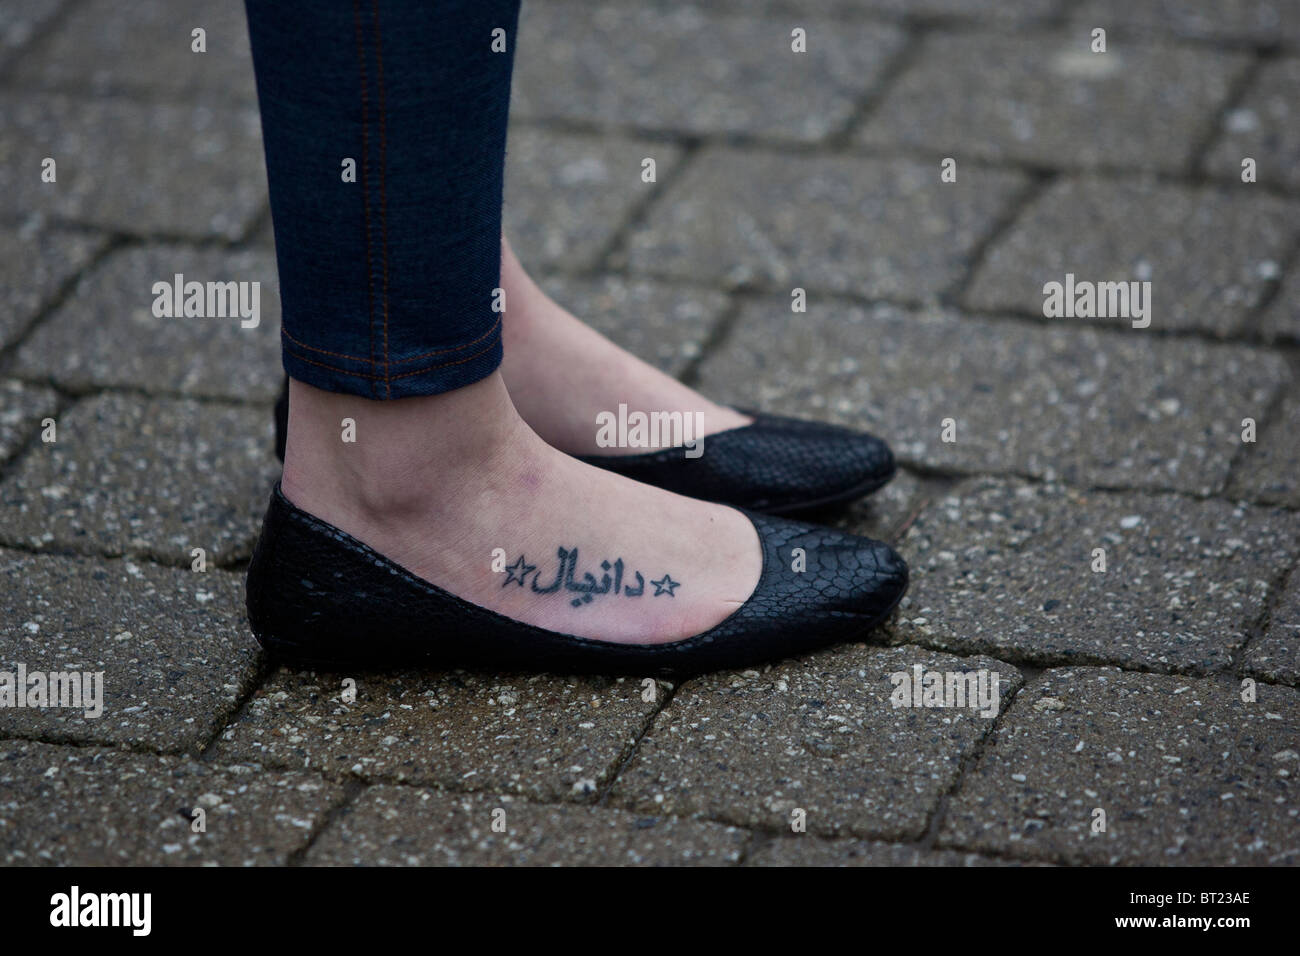 Los pies femeninos tatuados con el alfabeto árabe, zapatos negros. Foto de stock